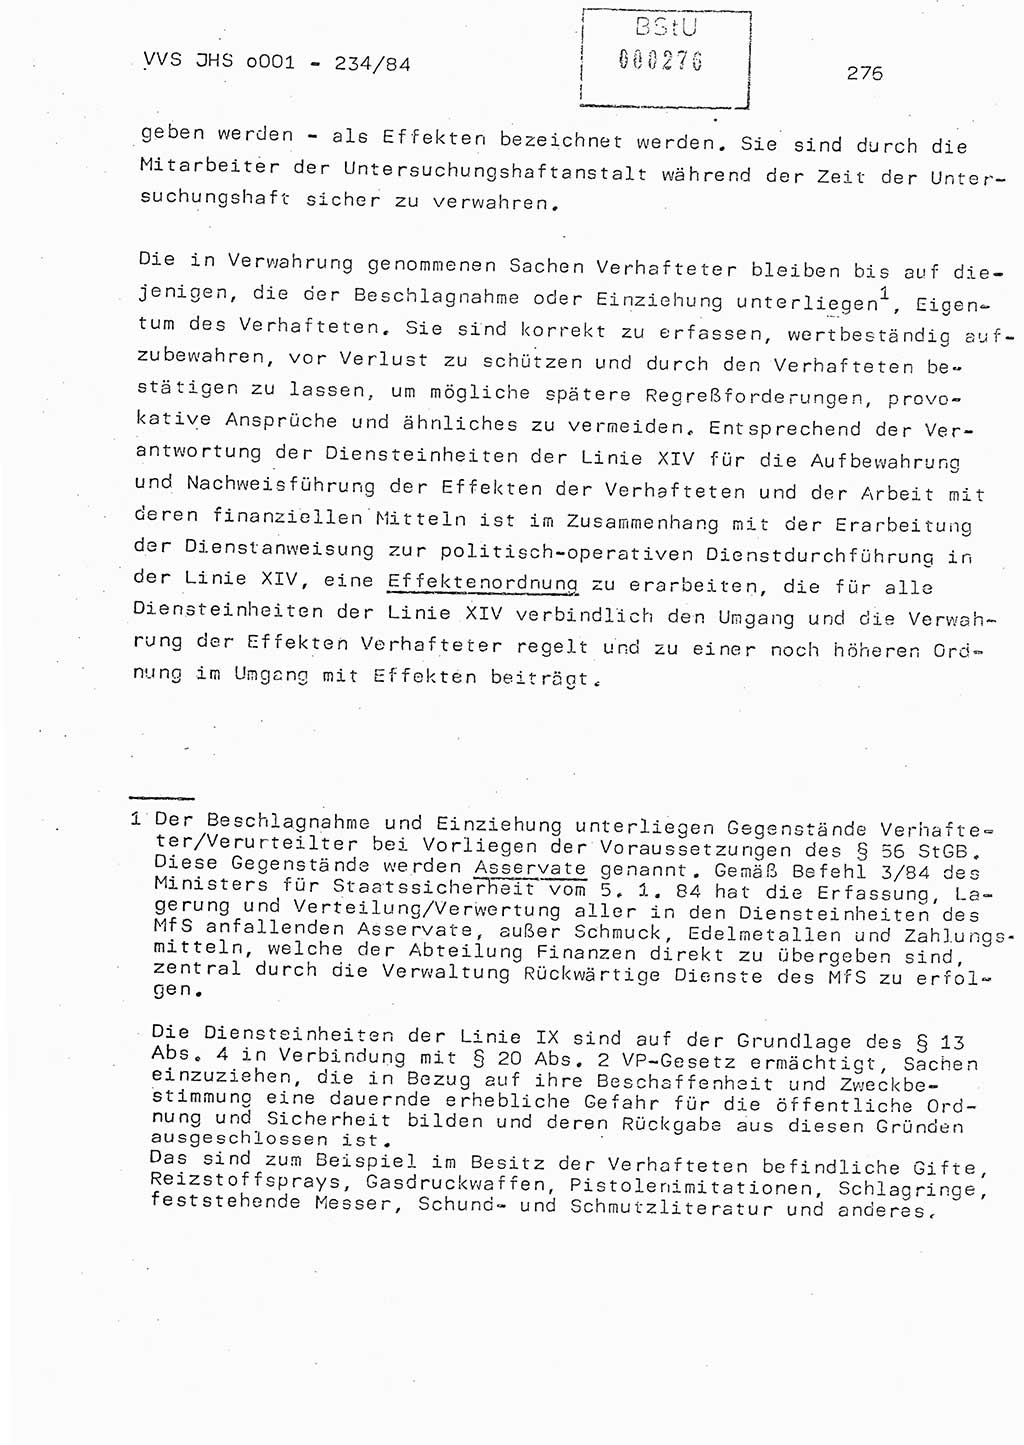 Dissertation Oberst Siegfried Rataizick (Abt. ⅩⅣ), Oberstleutnant Volkmar Heinz (Abt. ⅩⅣ), Oberstleutnant Werner Stein (HA Ⅸ), Hauptmann Heinz Conrad (JHS), Ministerium für Staatssicherheit (MfS) [Deutsche Demokratische Republik (DDR)], Juristische Hochschule (JHS), Vertrauliche Verschlußsache (VVS) o001-234/84, Potsdam 1984, Seite 276 (Diss. MfS DDR JHS VVS o001-234/84 1984, S. 276)